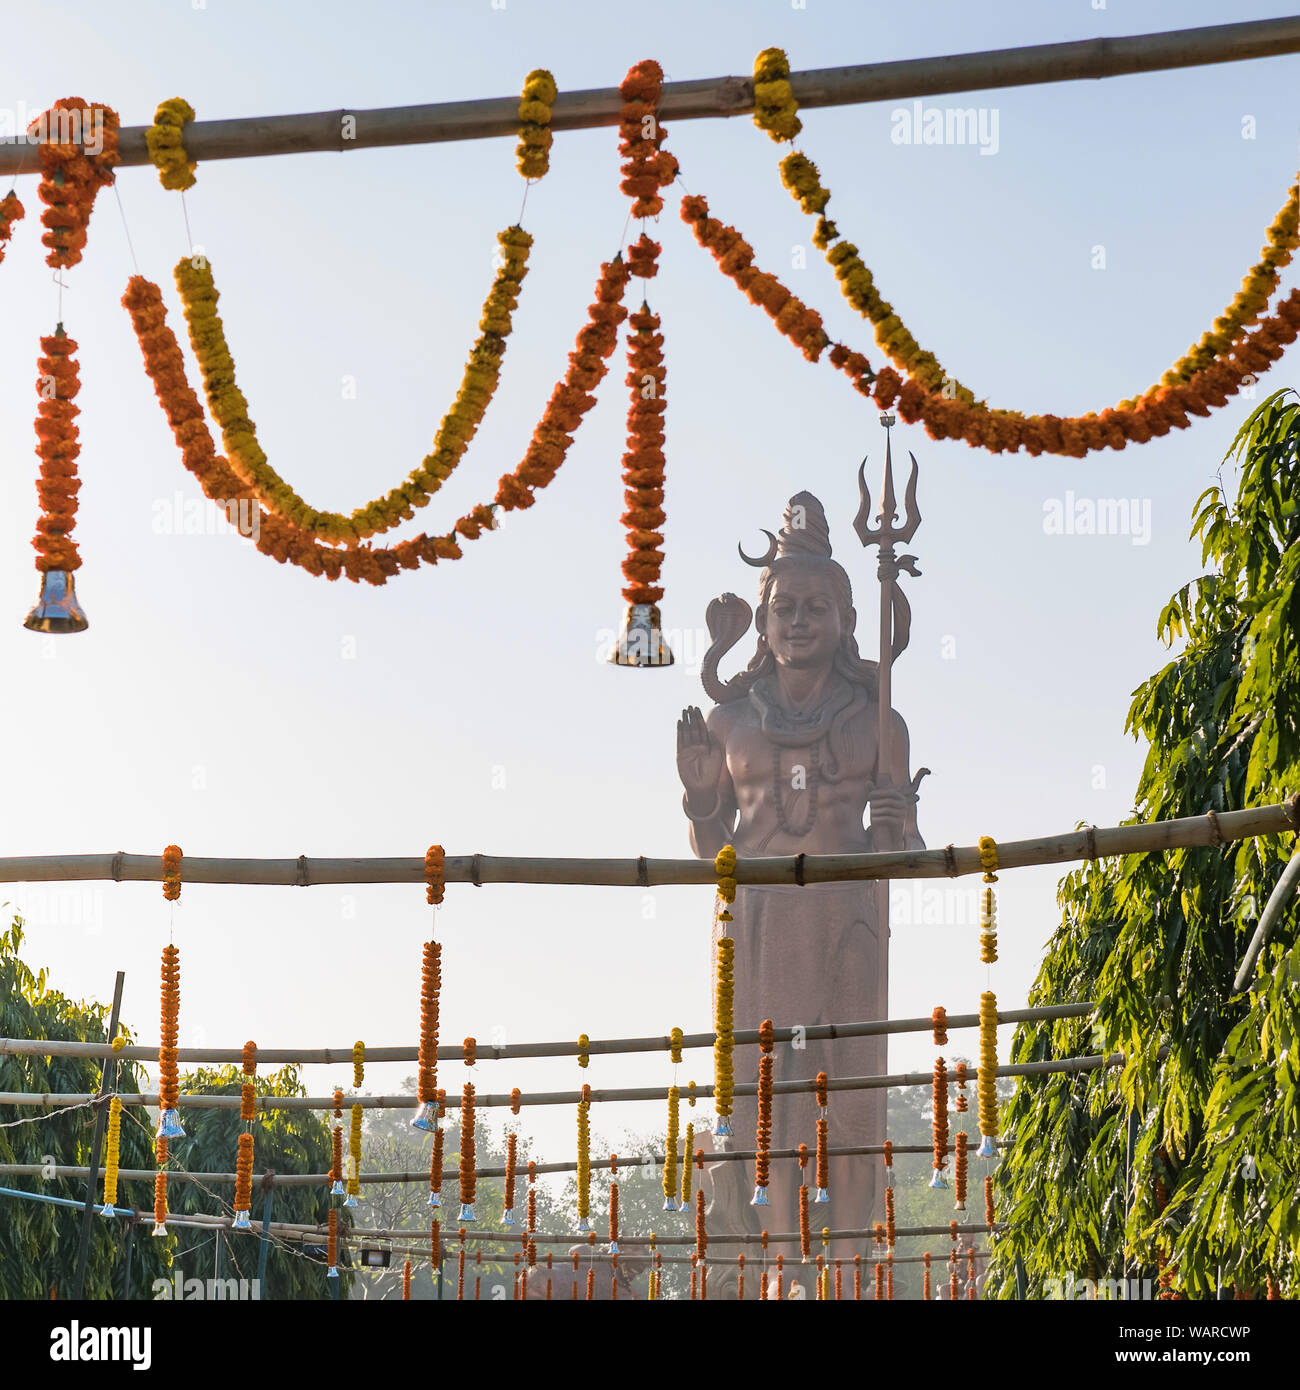 Statue de seigneur Shiva enveloppée d'un serpent, tenant un trident, à l'extérieur de New Delhi, Inde Banque D'Images